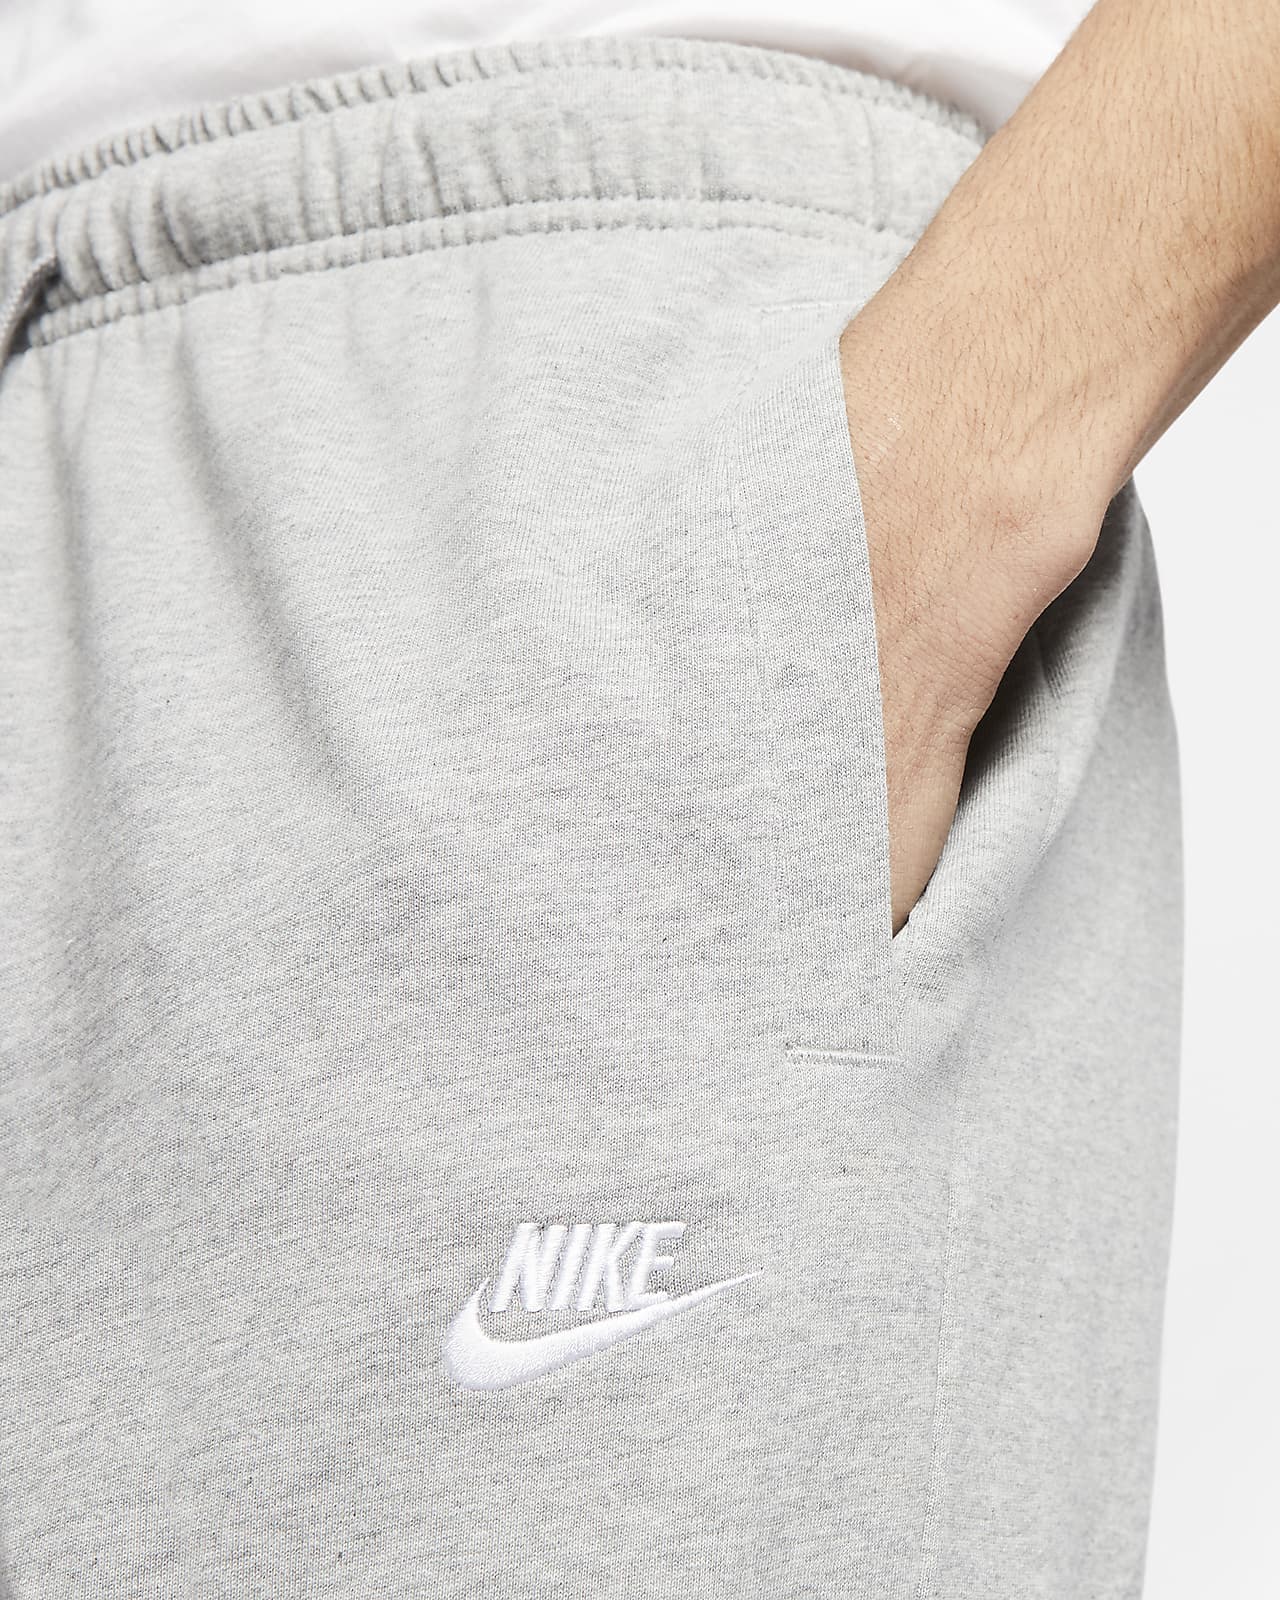 Nike Sportswear Club Fleece Men's Jersey Pants